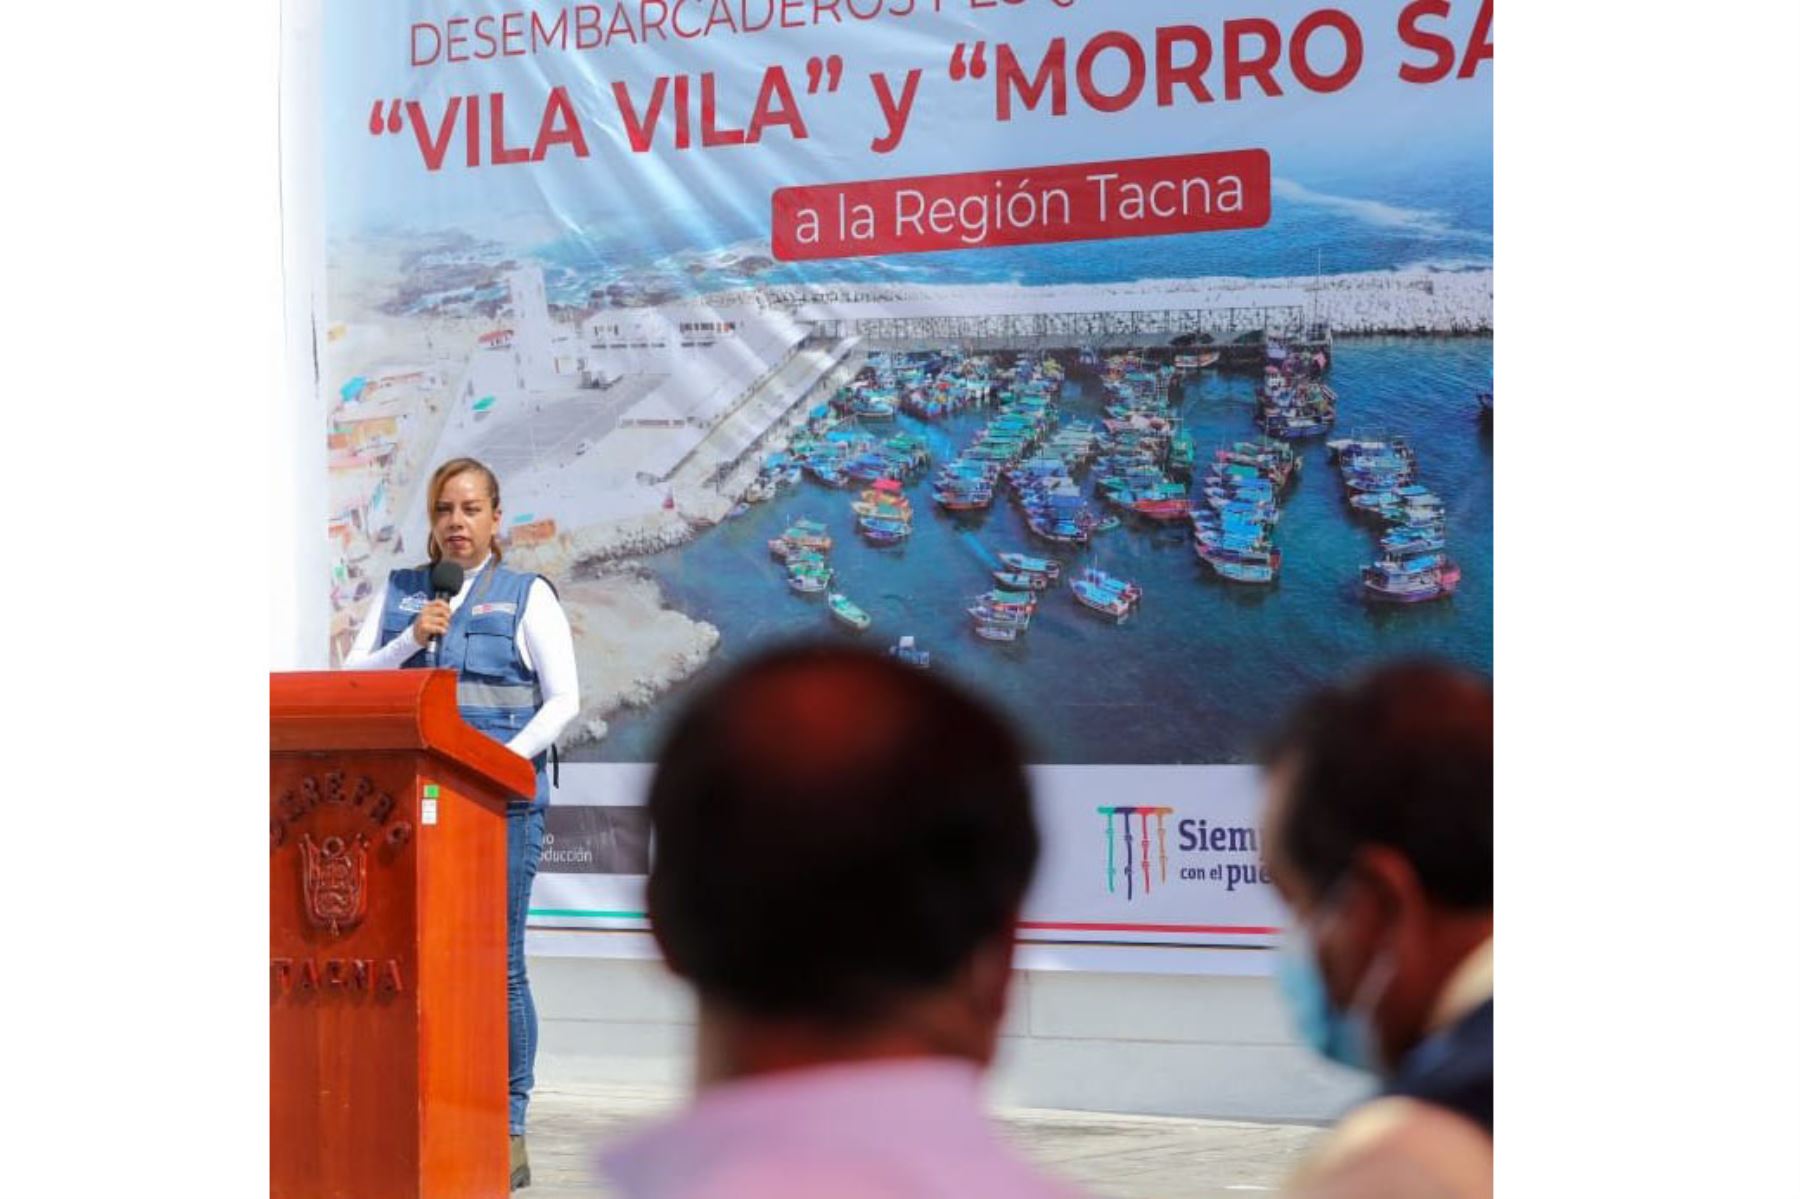 El Ministerio de la Producción realizó la transferencia oficial de los desembarcaderos pesqueros artesanales de Morro Sama y Vila Vila a la región Tacna, como parte del proceso de descentralización para el desarrollo integral del país.
Foto: Ministerio de la Producción